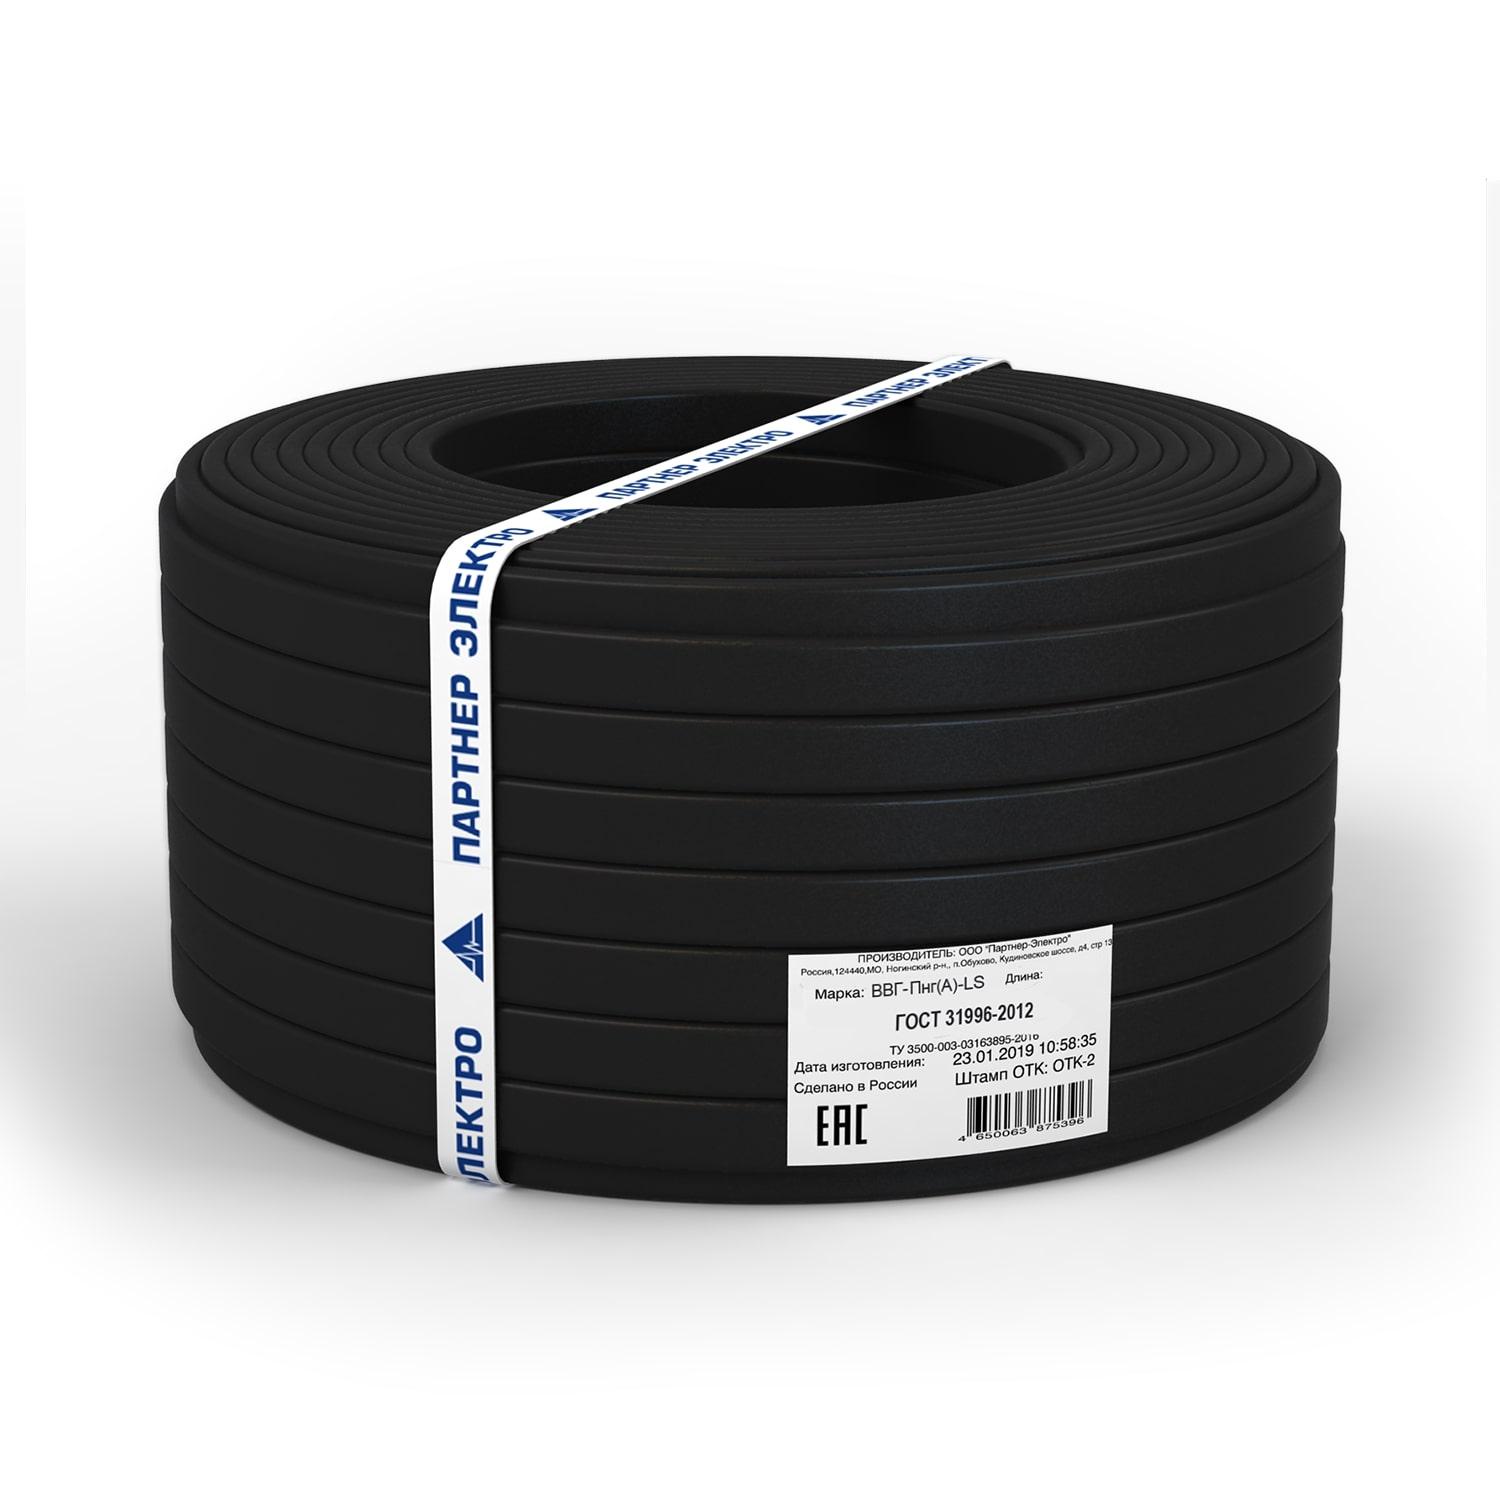 фото Силовой кабель Партнер-Электро Кабель ВВГ-ПнгГОСТ (А)-LS 3х2,5 ГОСТ (100м), черный